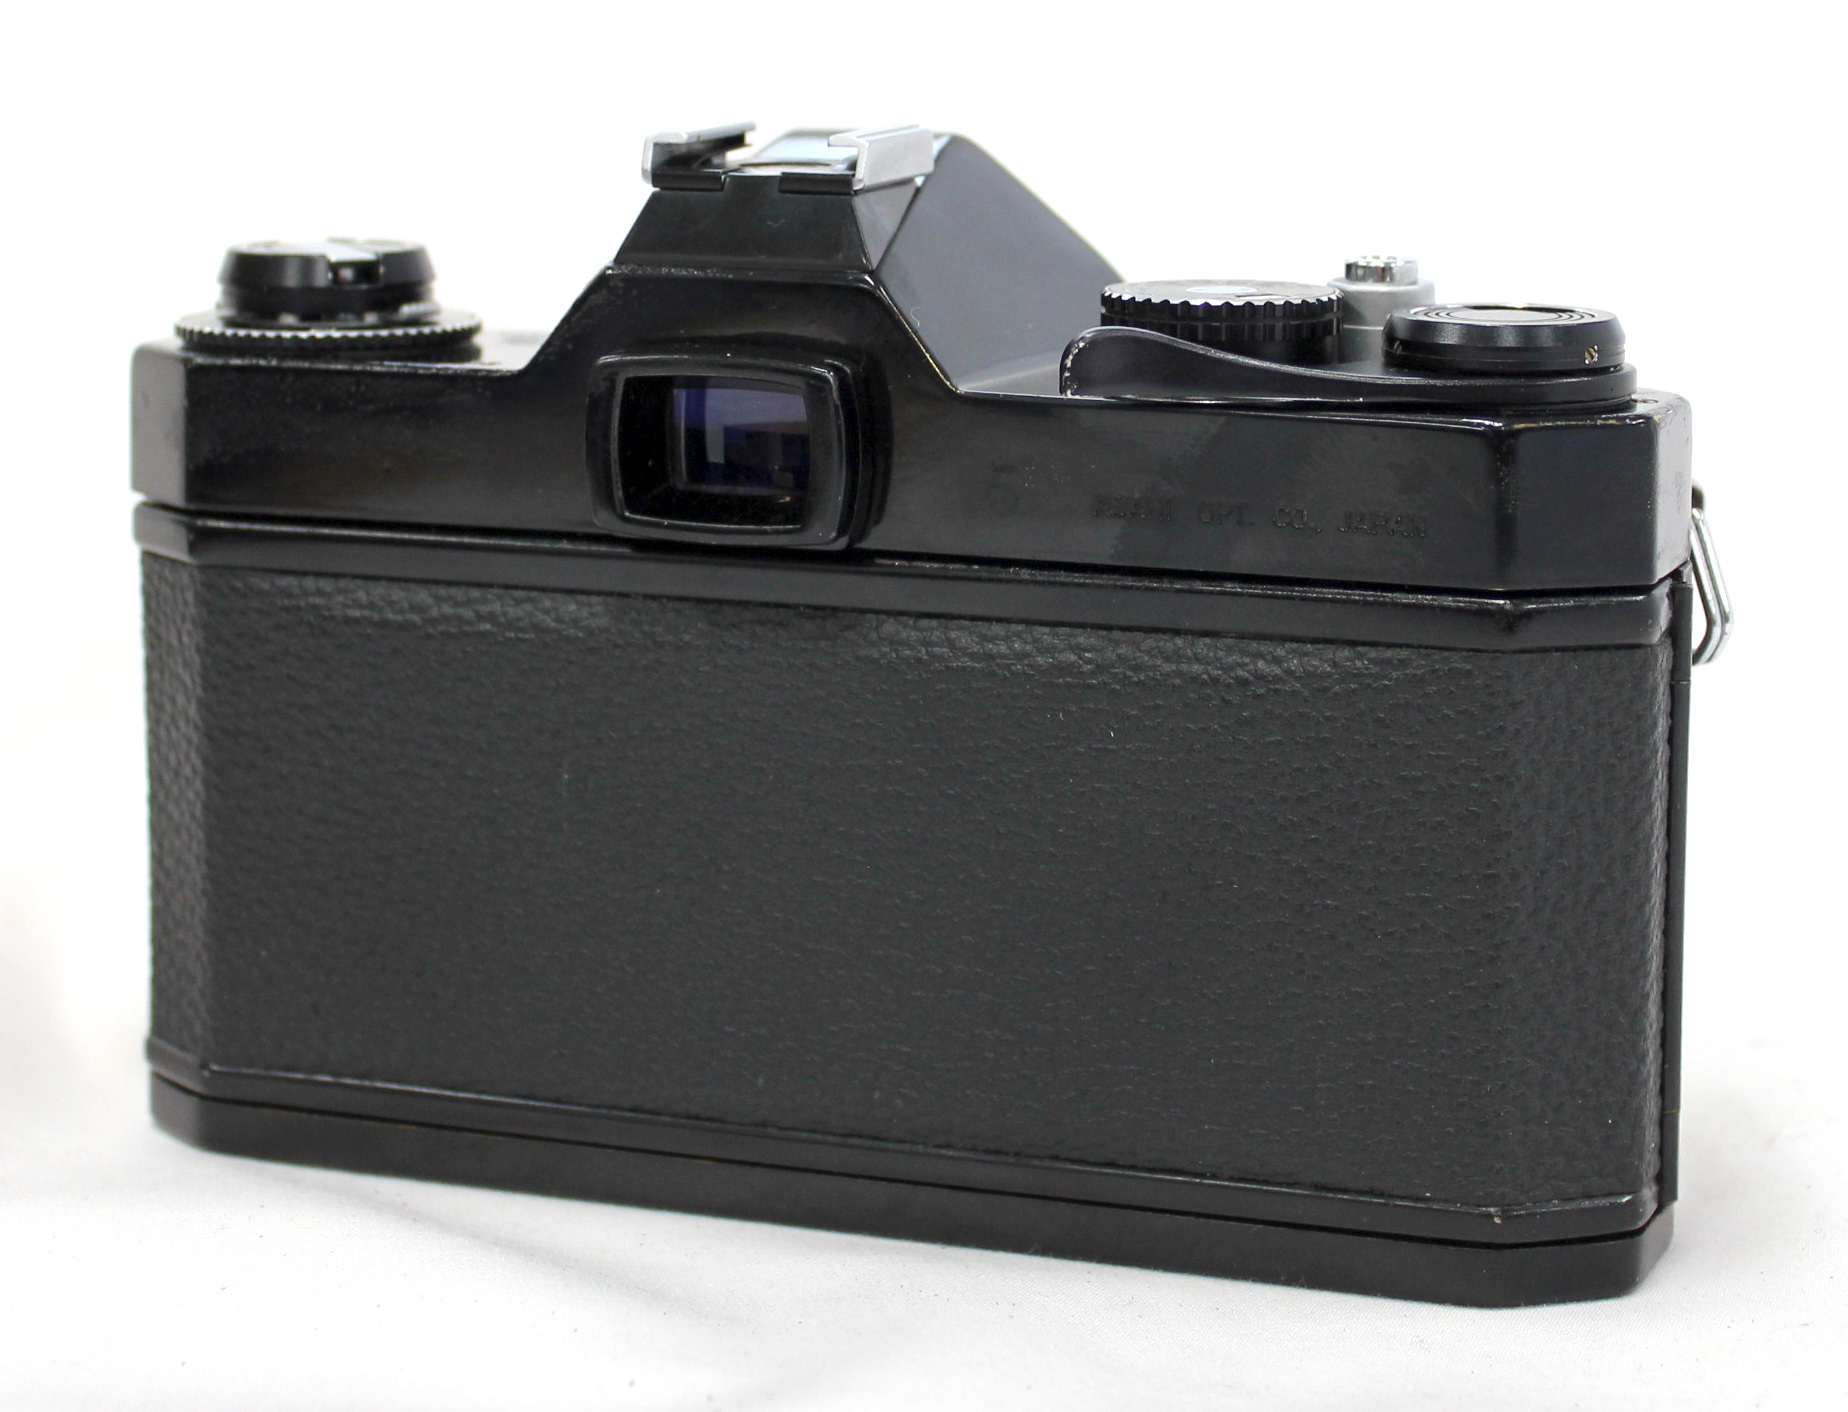 Asahi Pentax Spotmatic F SPF Black SLR Camera w/ SMC Takumar 55mm 